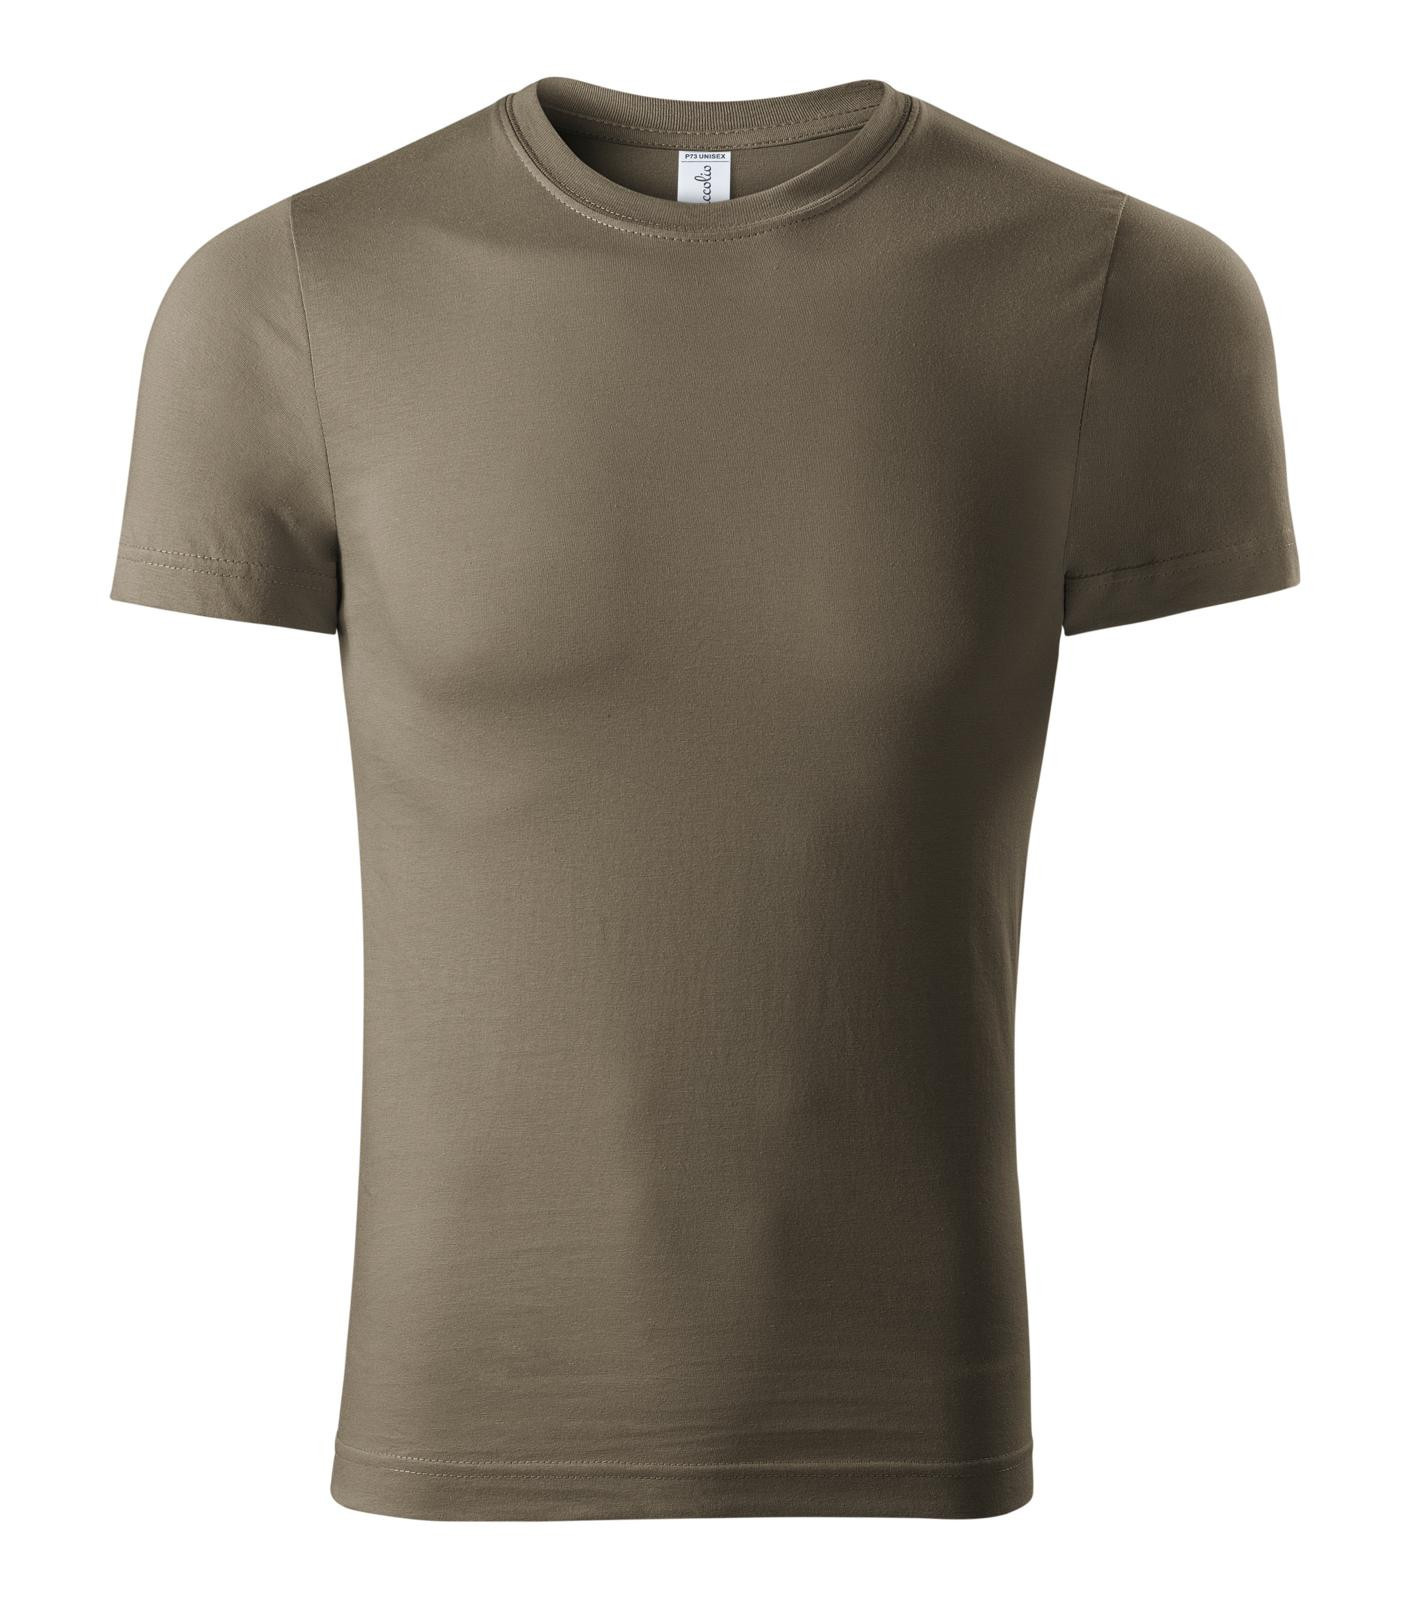 Unisex tričko Piccolio Paint P73 - veľkosť: XXL, farba: army